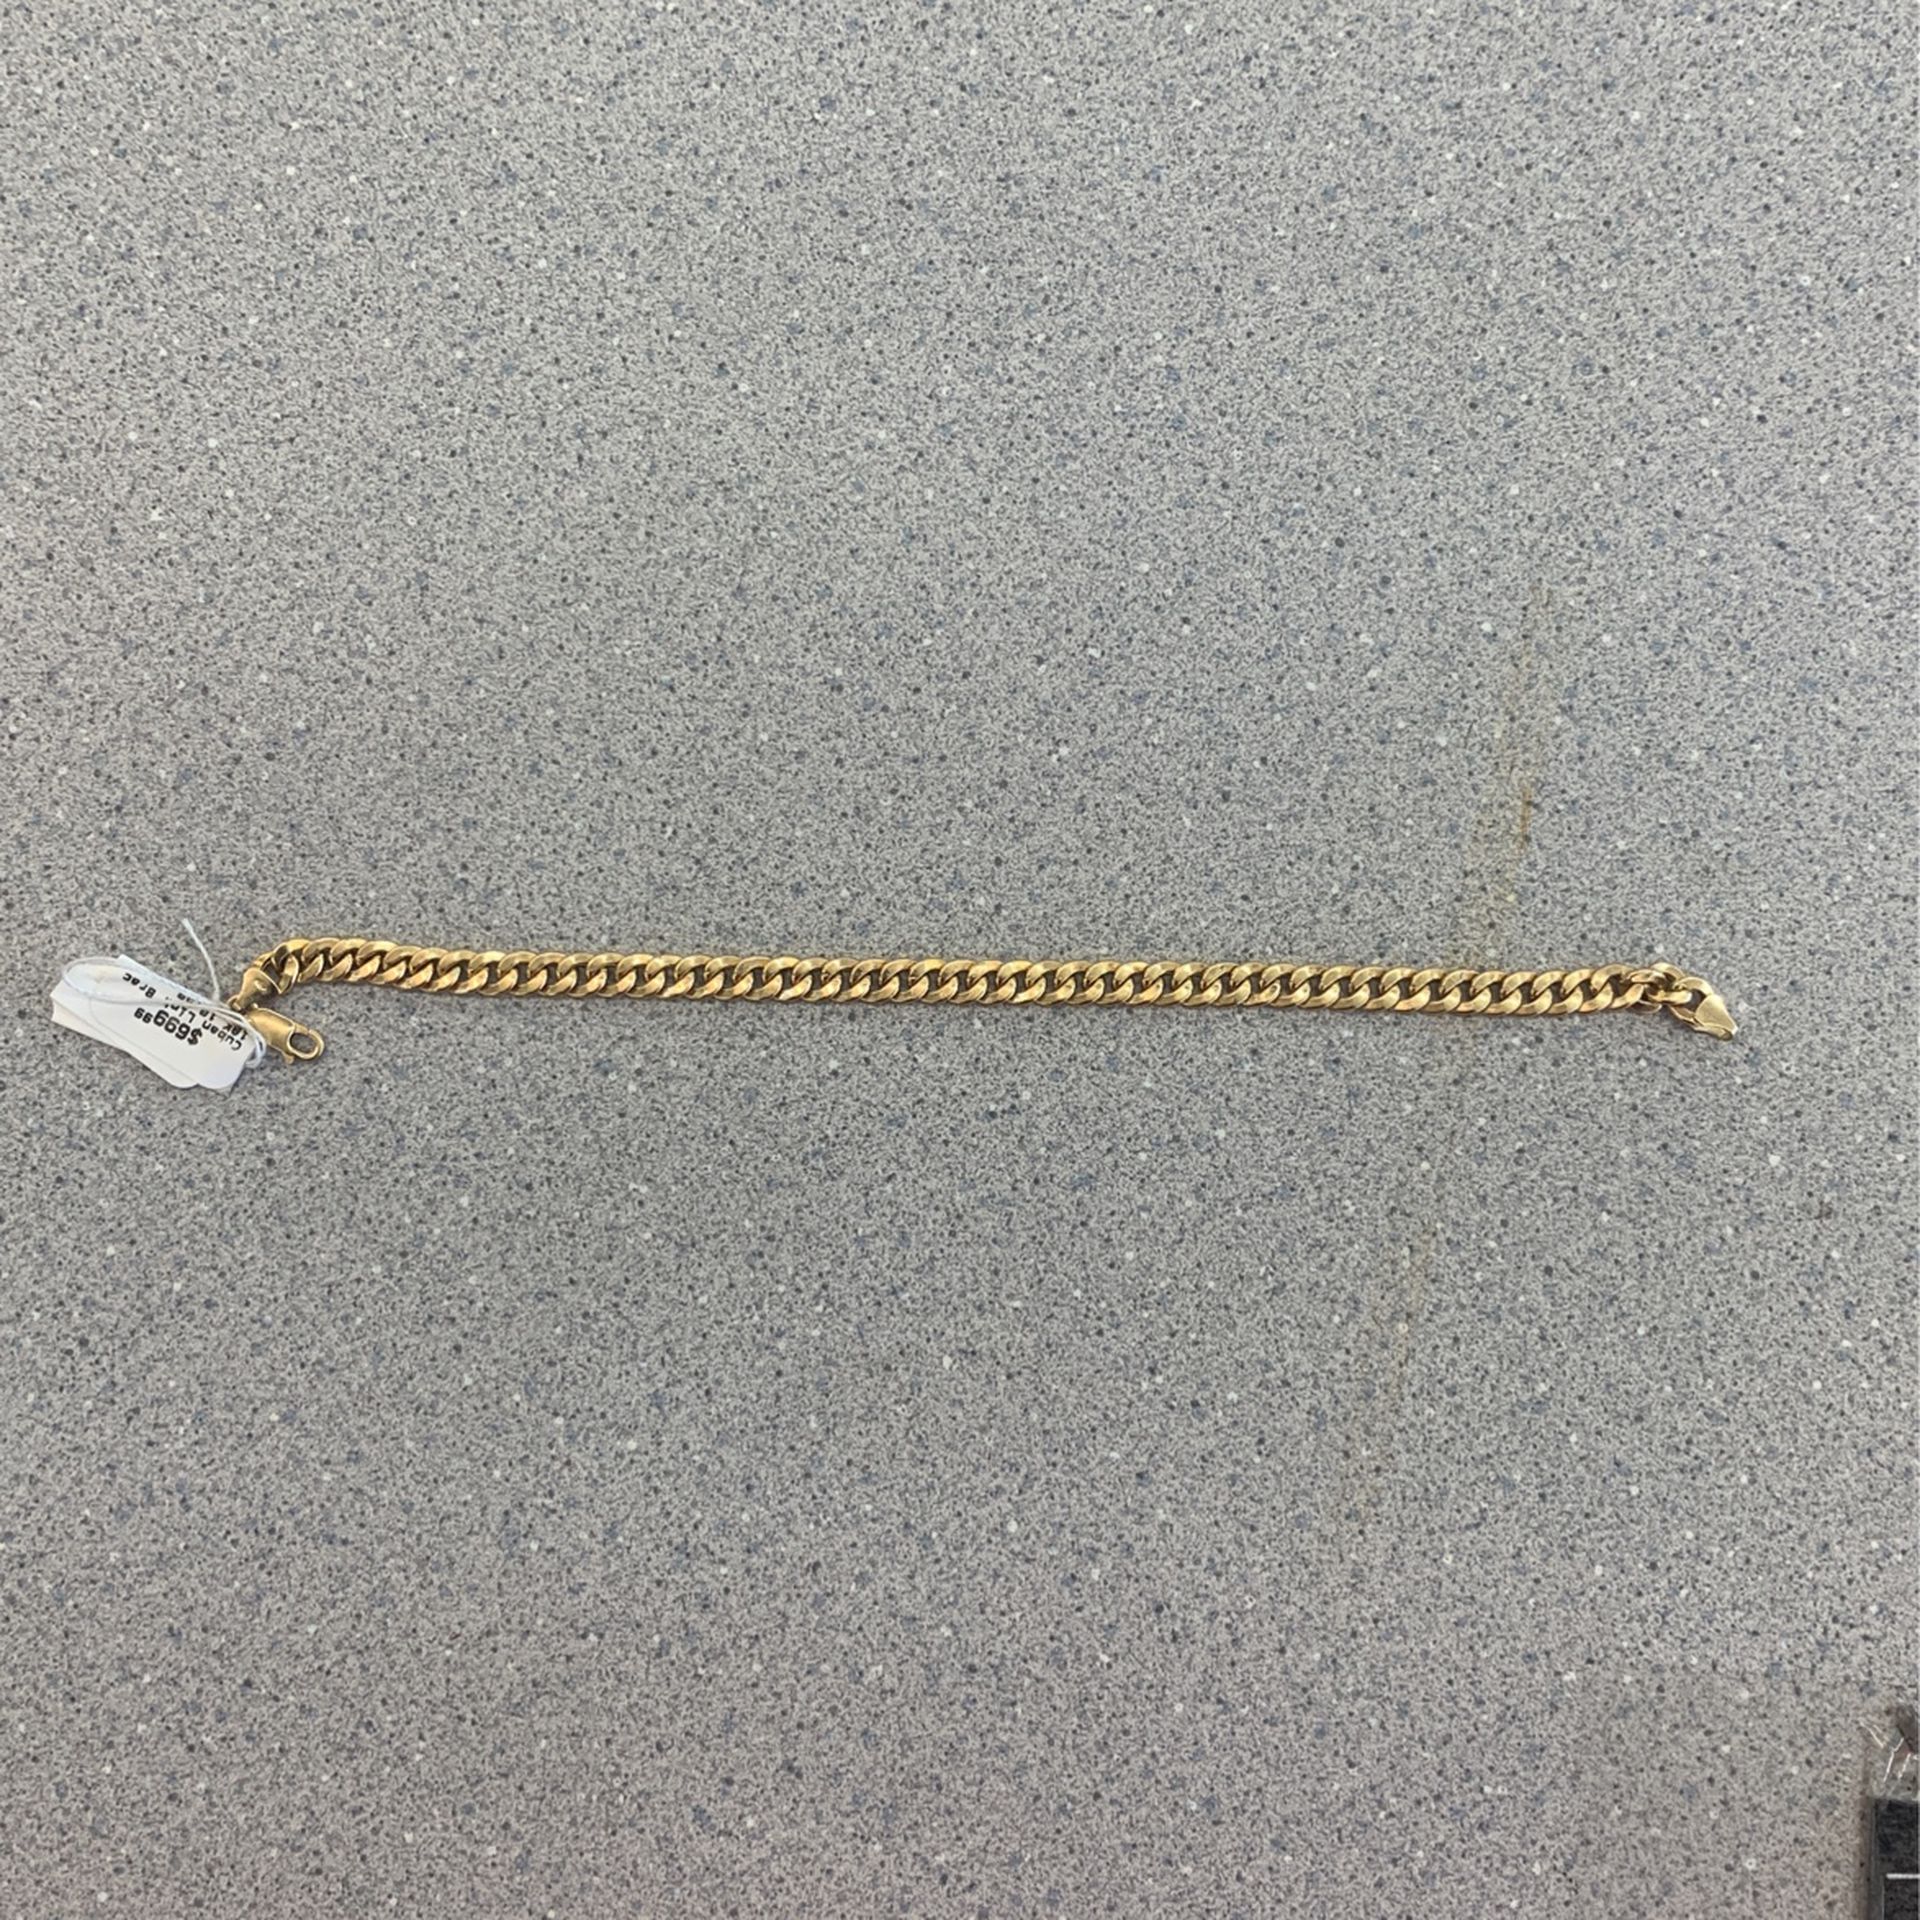 18k Gold Link Bracelet 